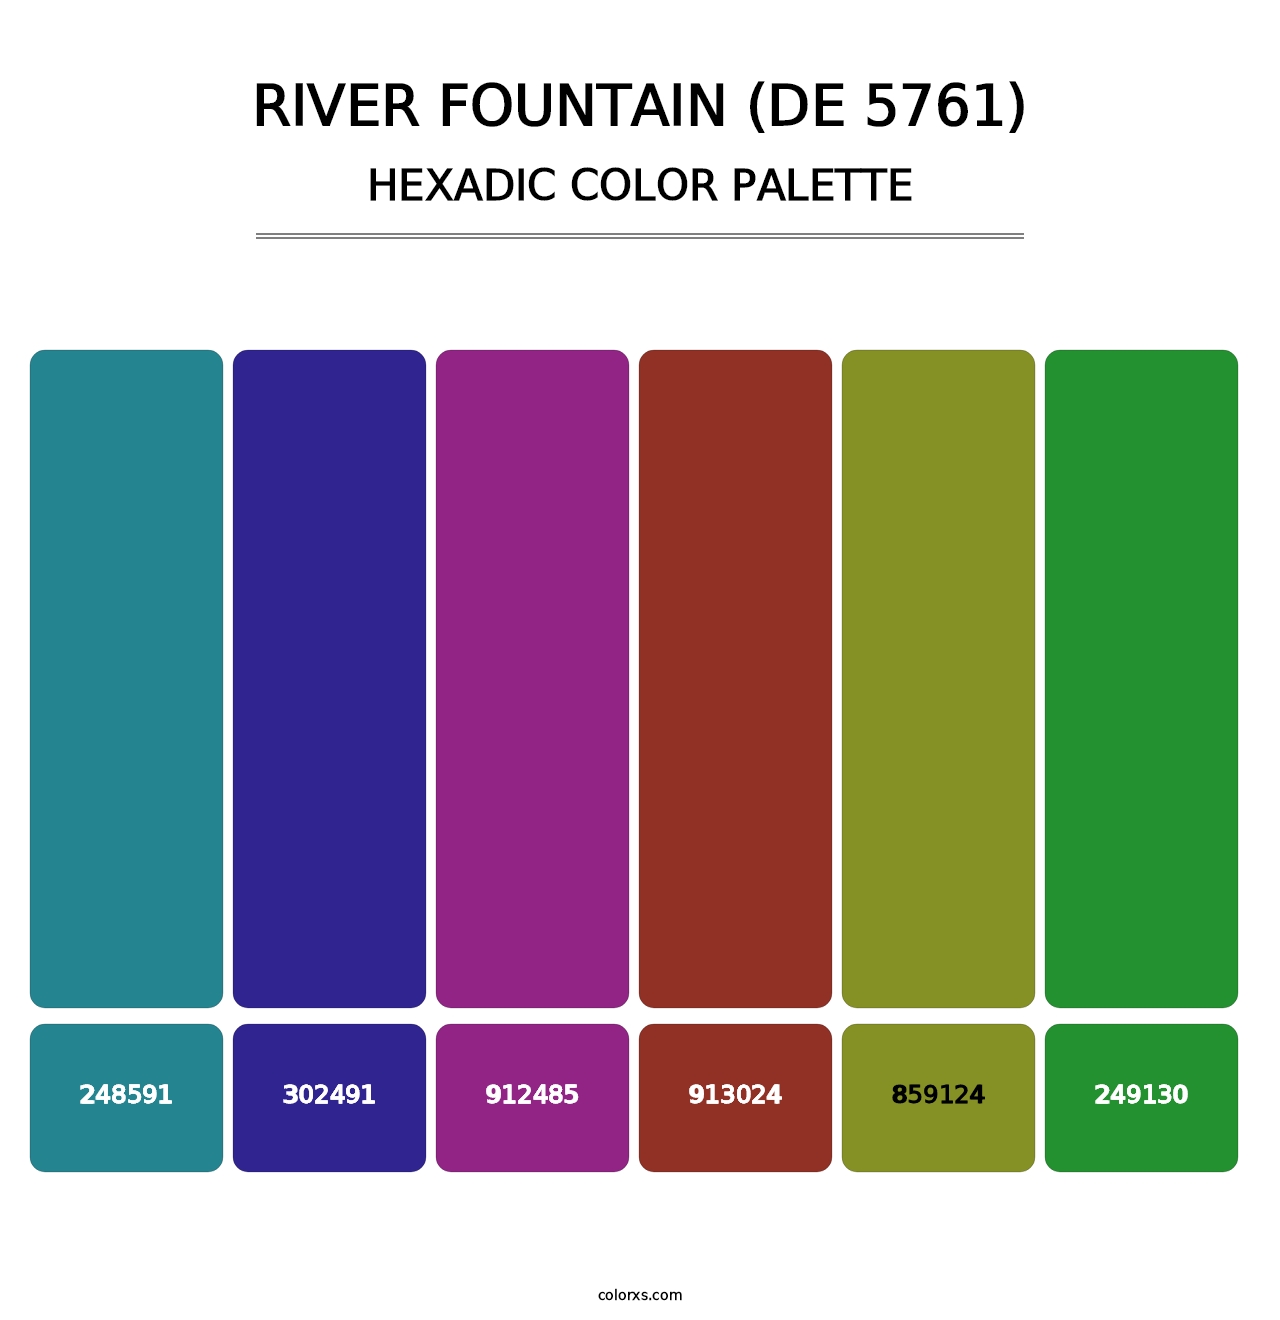 River Fountain (DE 5761) - Hexadic Color Palette